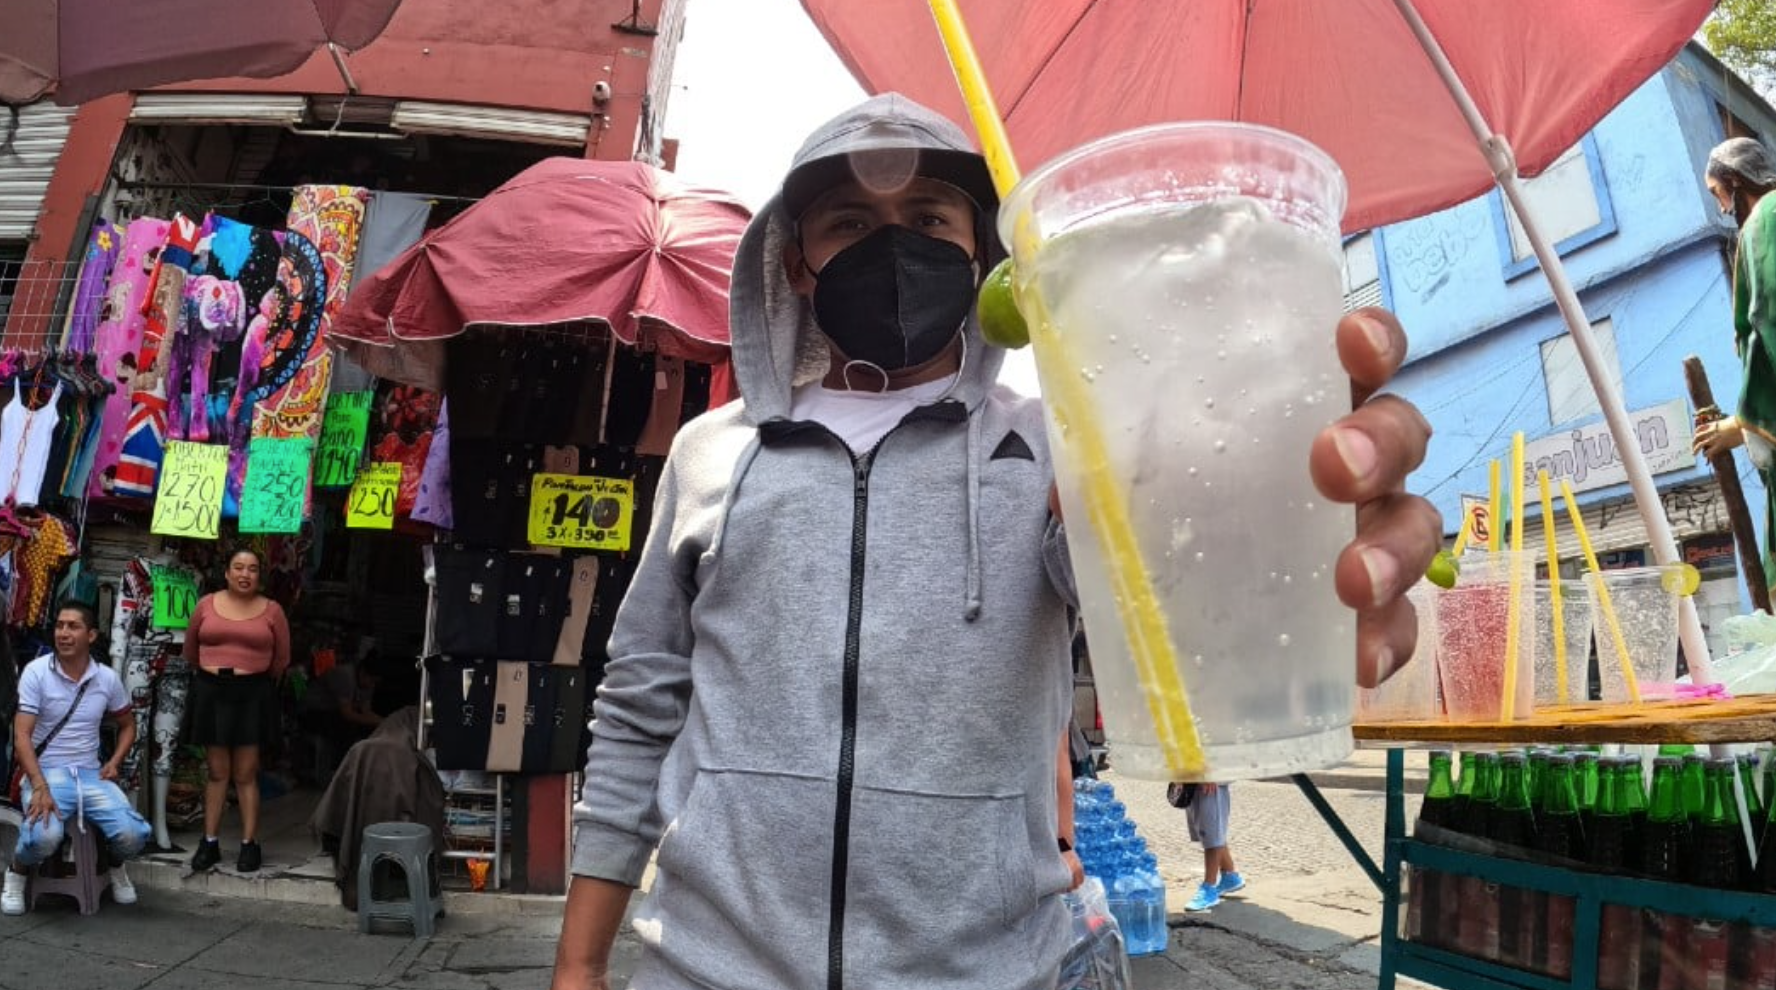 Suero callejero de CDMX, popular bebida que quita la sed